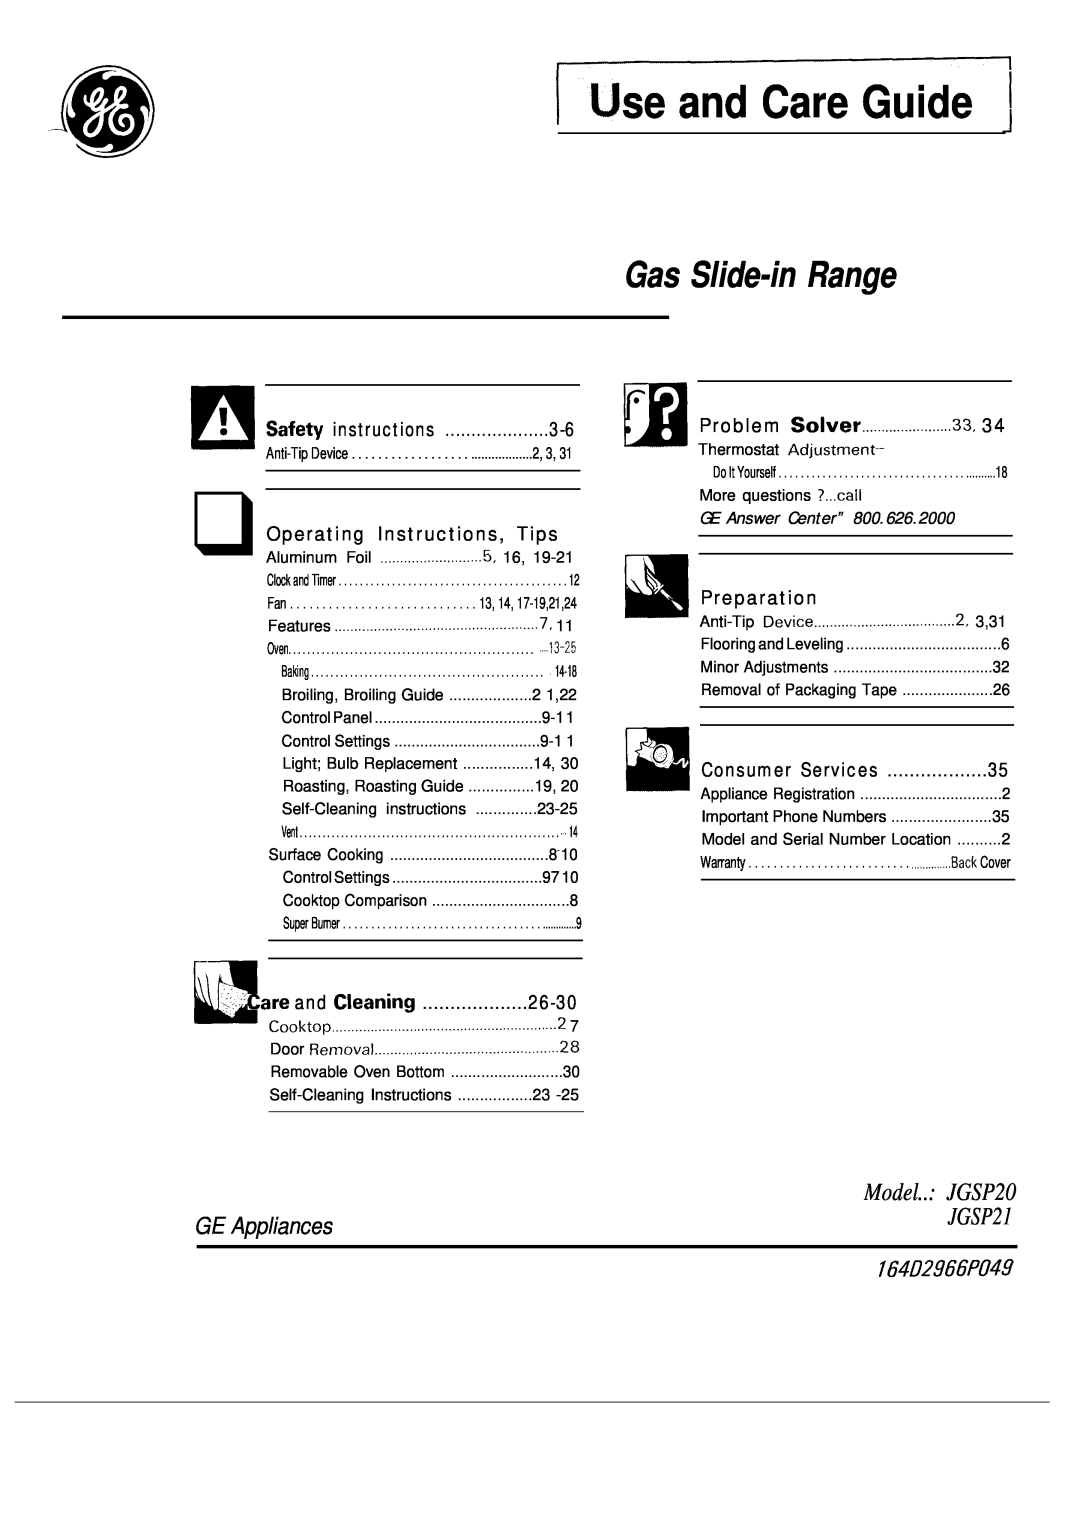 GE warranty IJse and Care Guide, Gas Slide-in Range, Model.. JGSP20, 164L72966P049, GE Appliances, JGSP21, 26-30, 3,31 